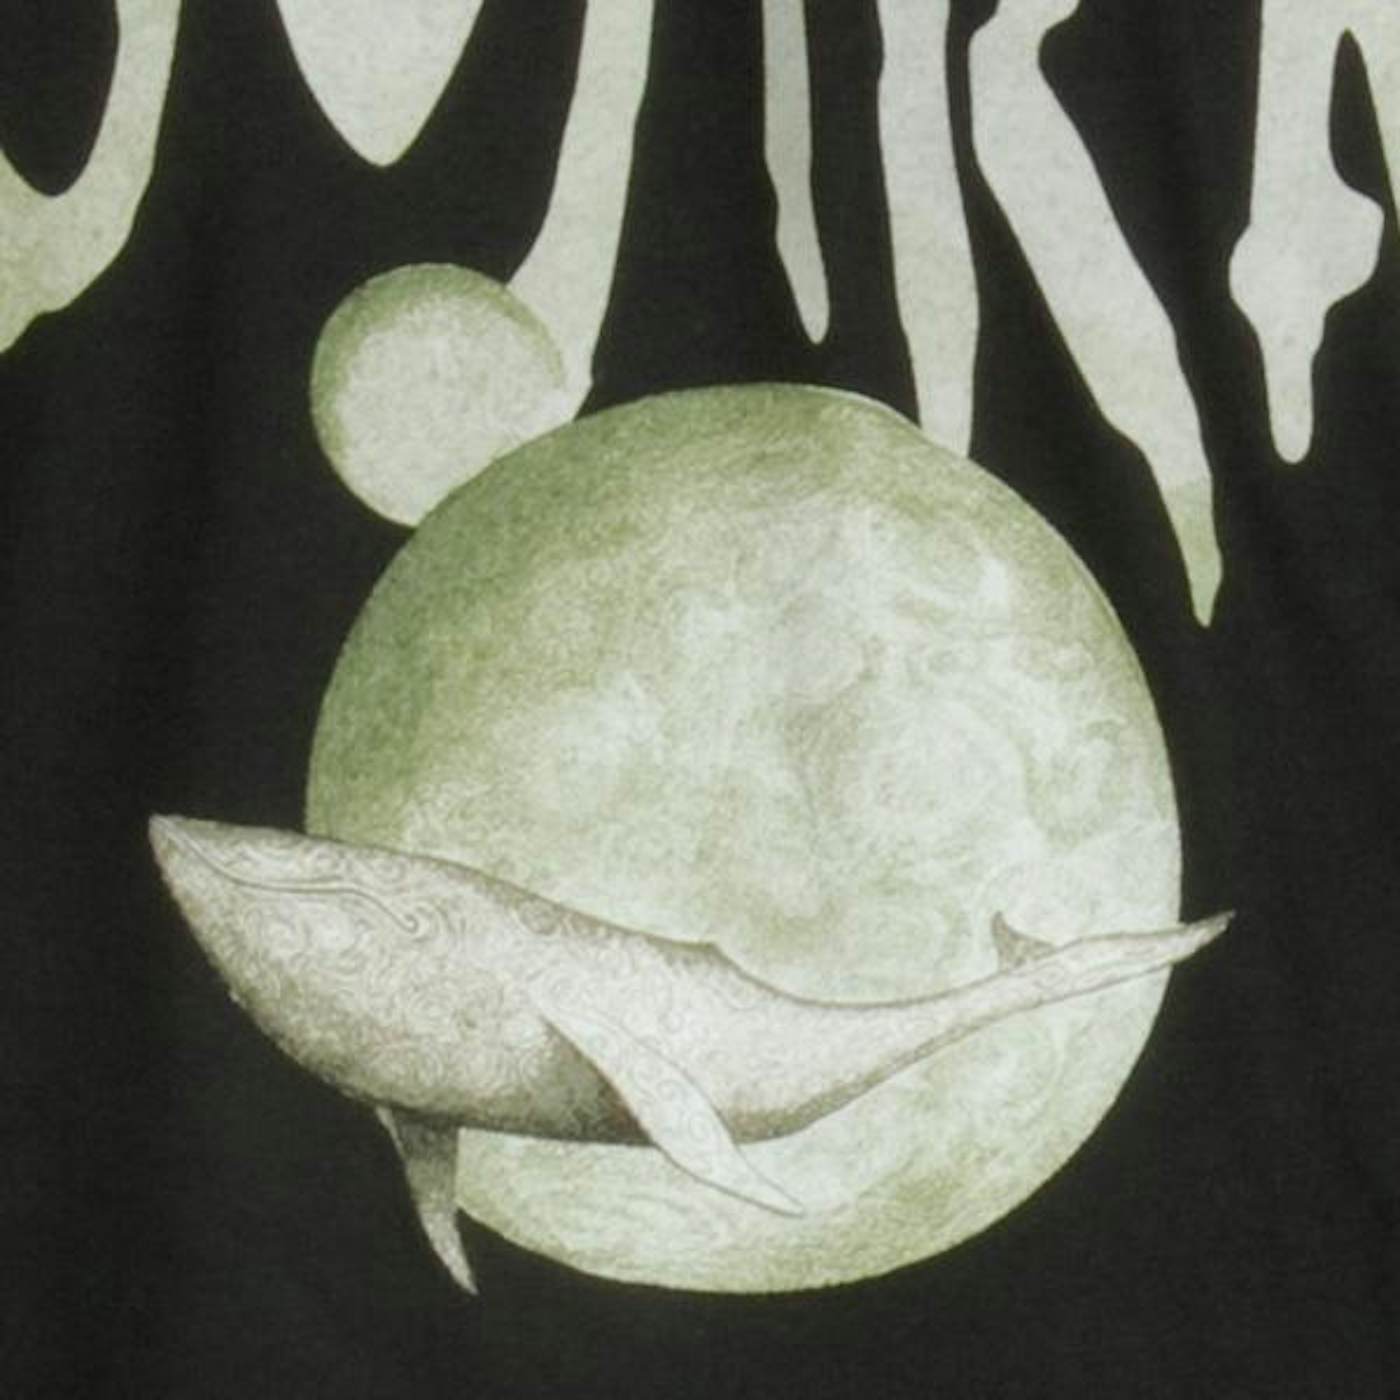 Gojira "From Mars To Sirius" T-Shirt